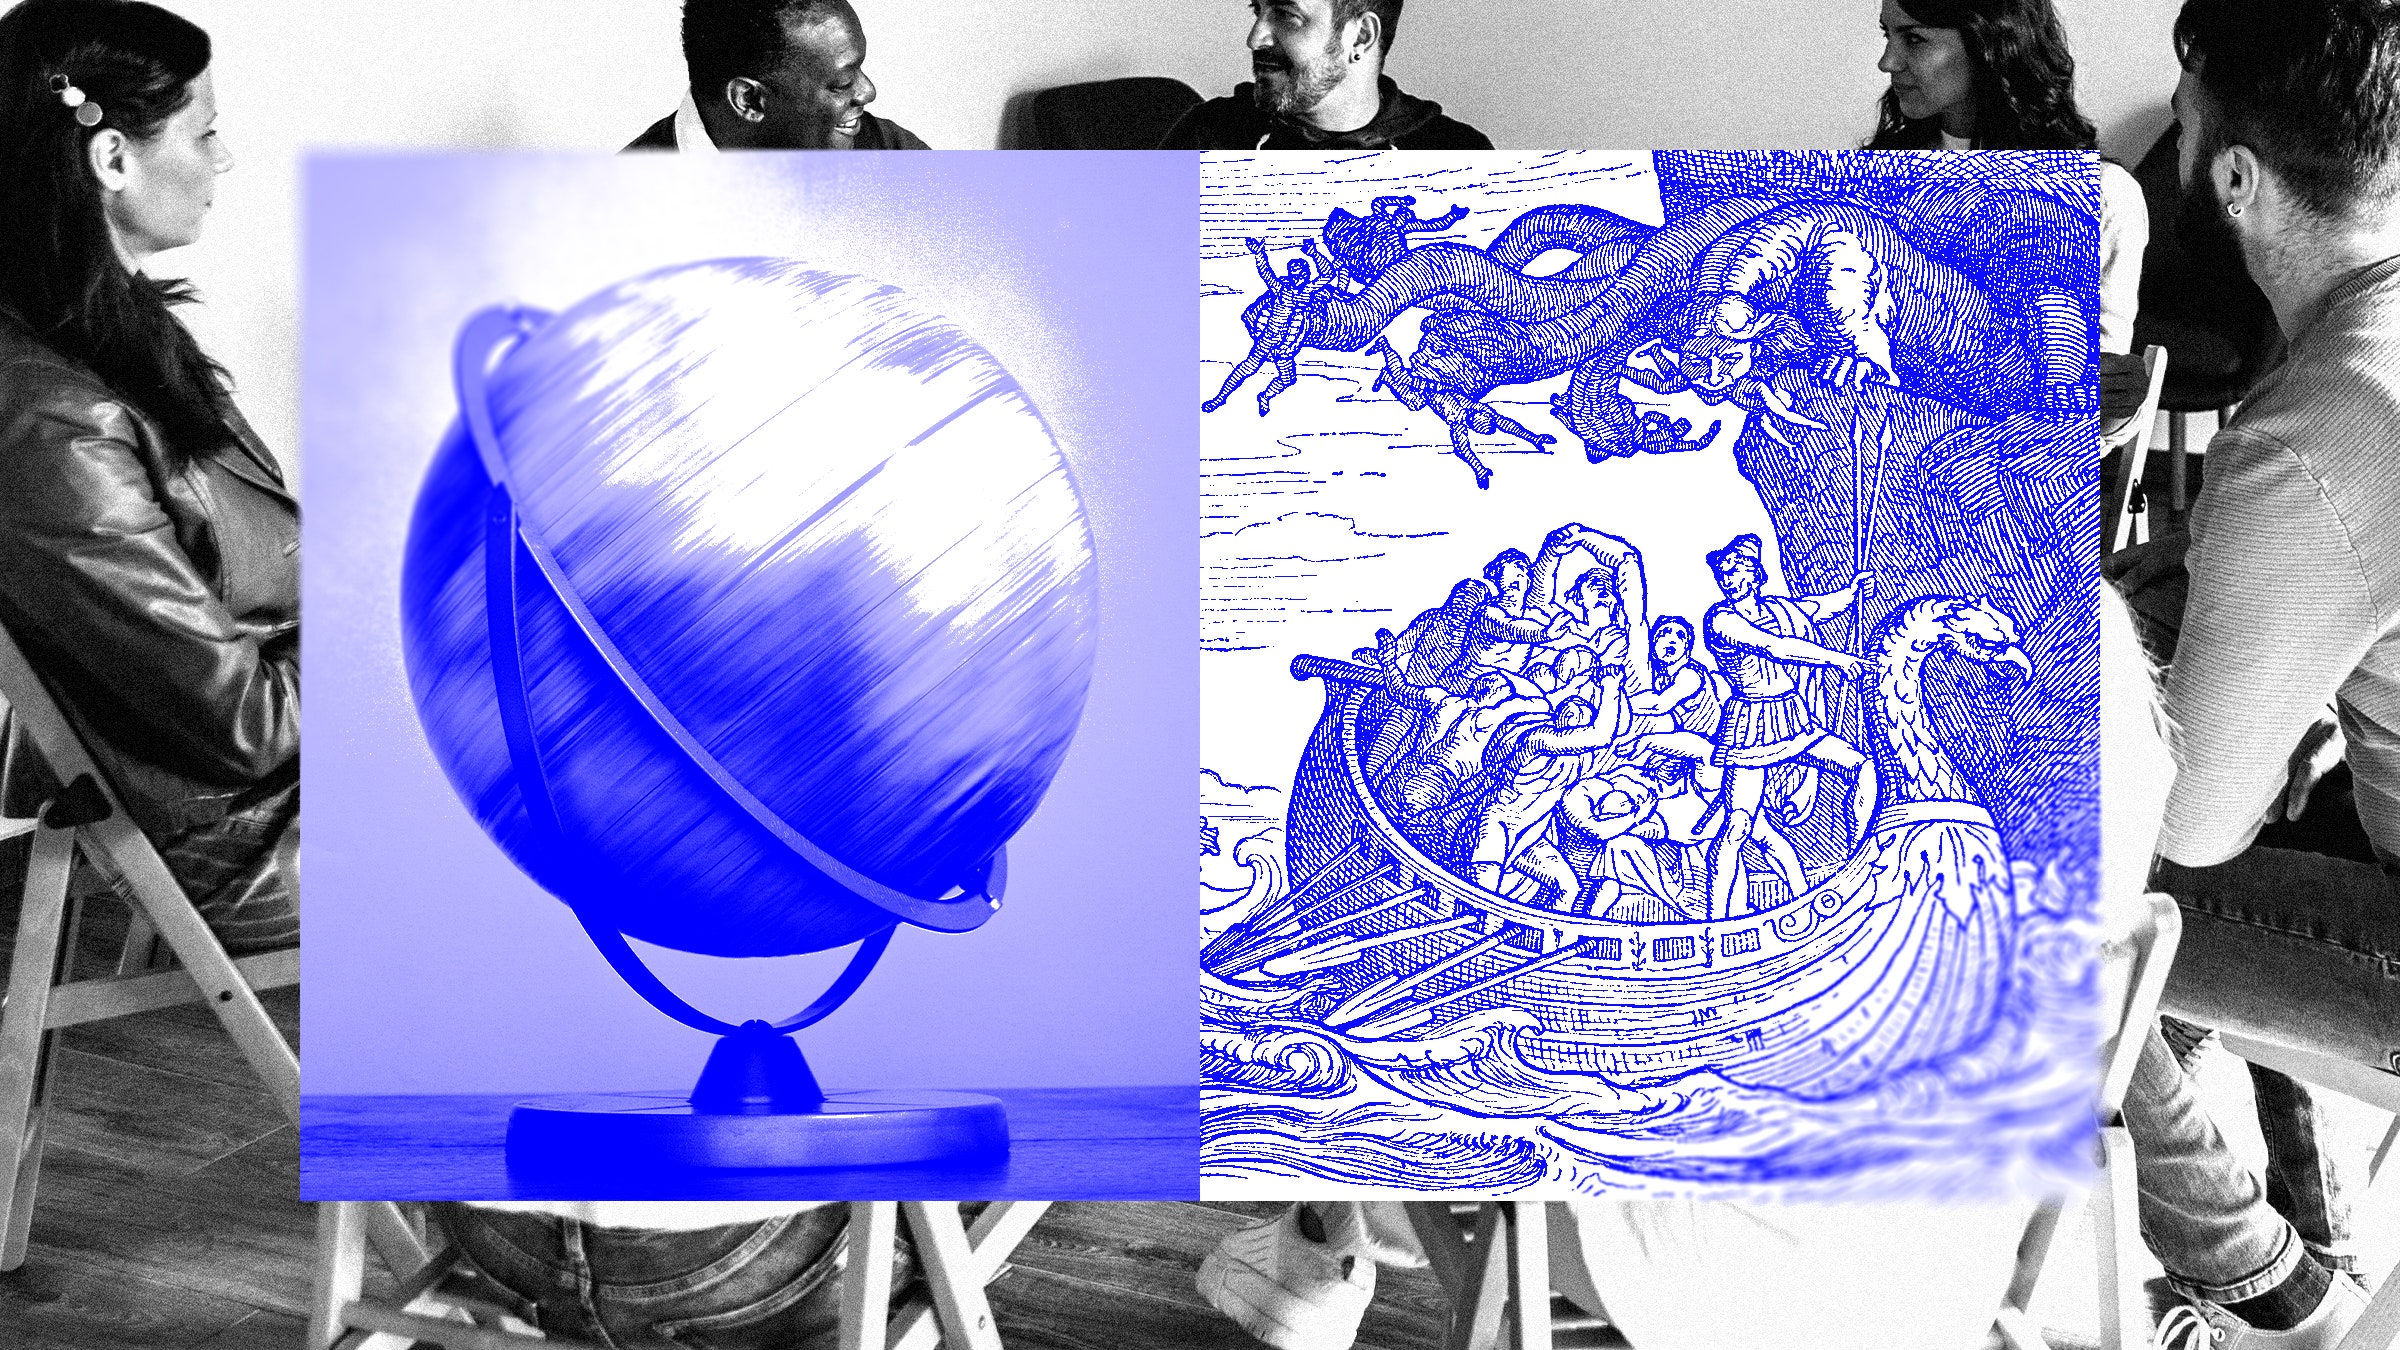 Colagem de fotos de um grupo de pessoas conversando com um globo giratório e uma ilustração de um navio lutando contra Cila e Caríbdis